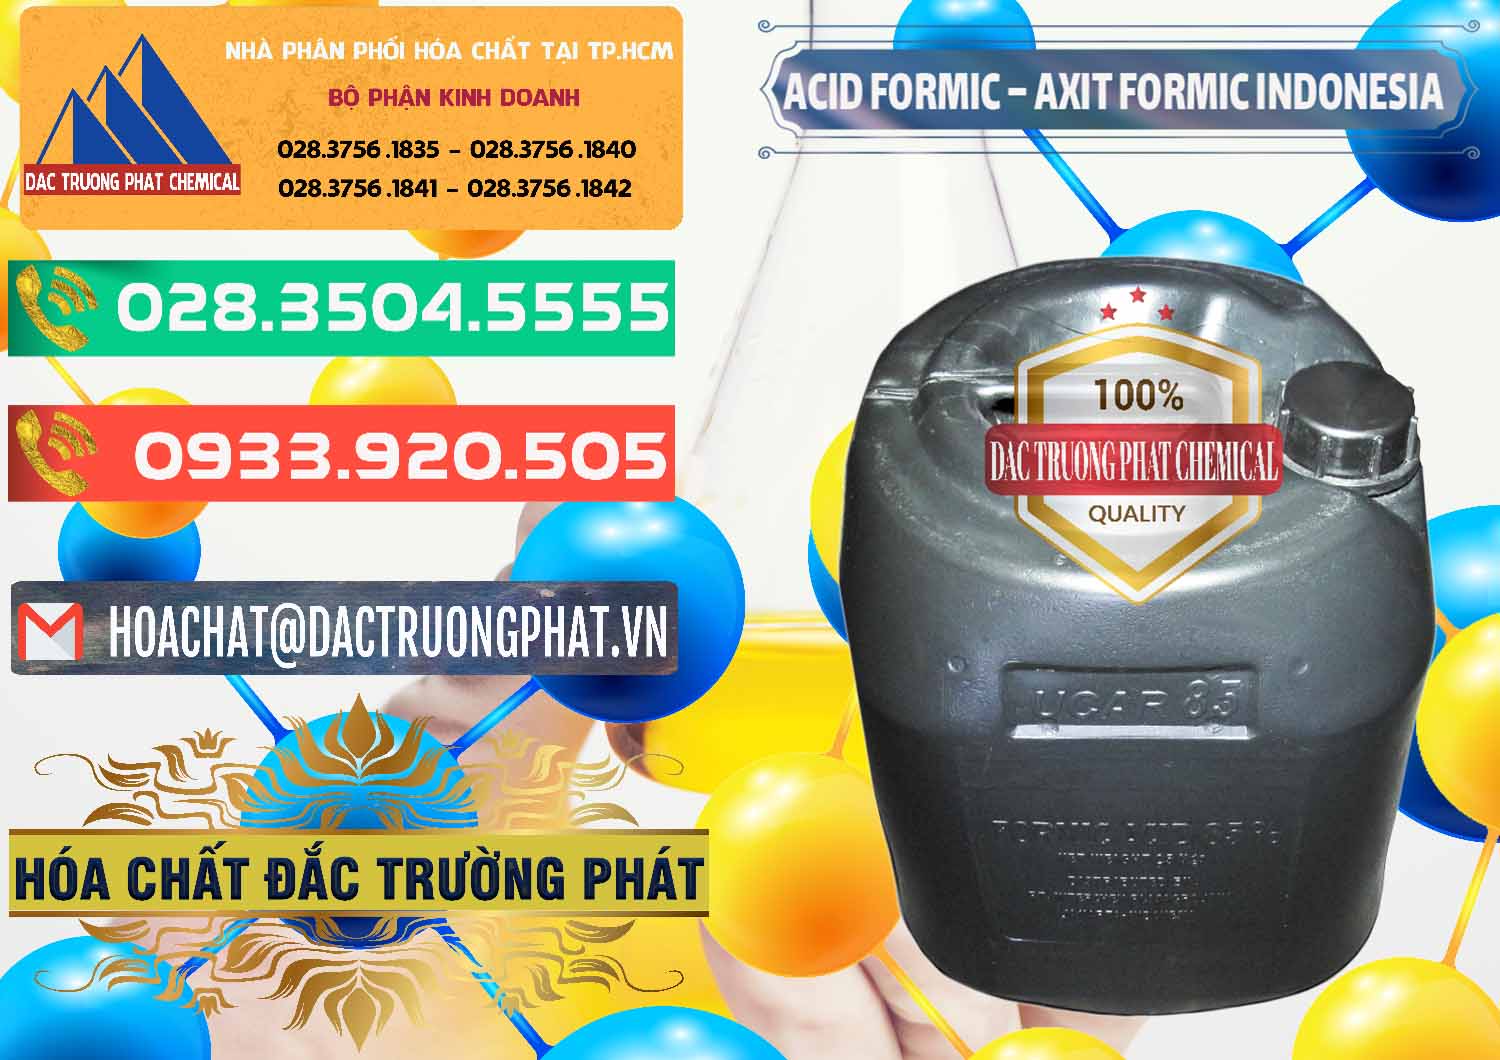 Cty chuyên bán & phân phối Acid Formic - Axit Formic Indonesia - 0026 - Nơi chuyên nhập khẩu _ phân phối hóa chất tại TP.HCM - congtyhoachat.com.vn